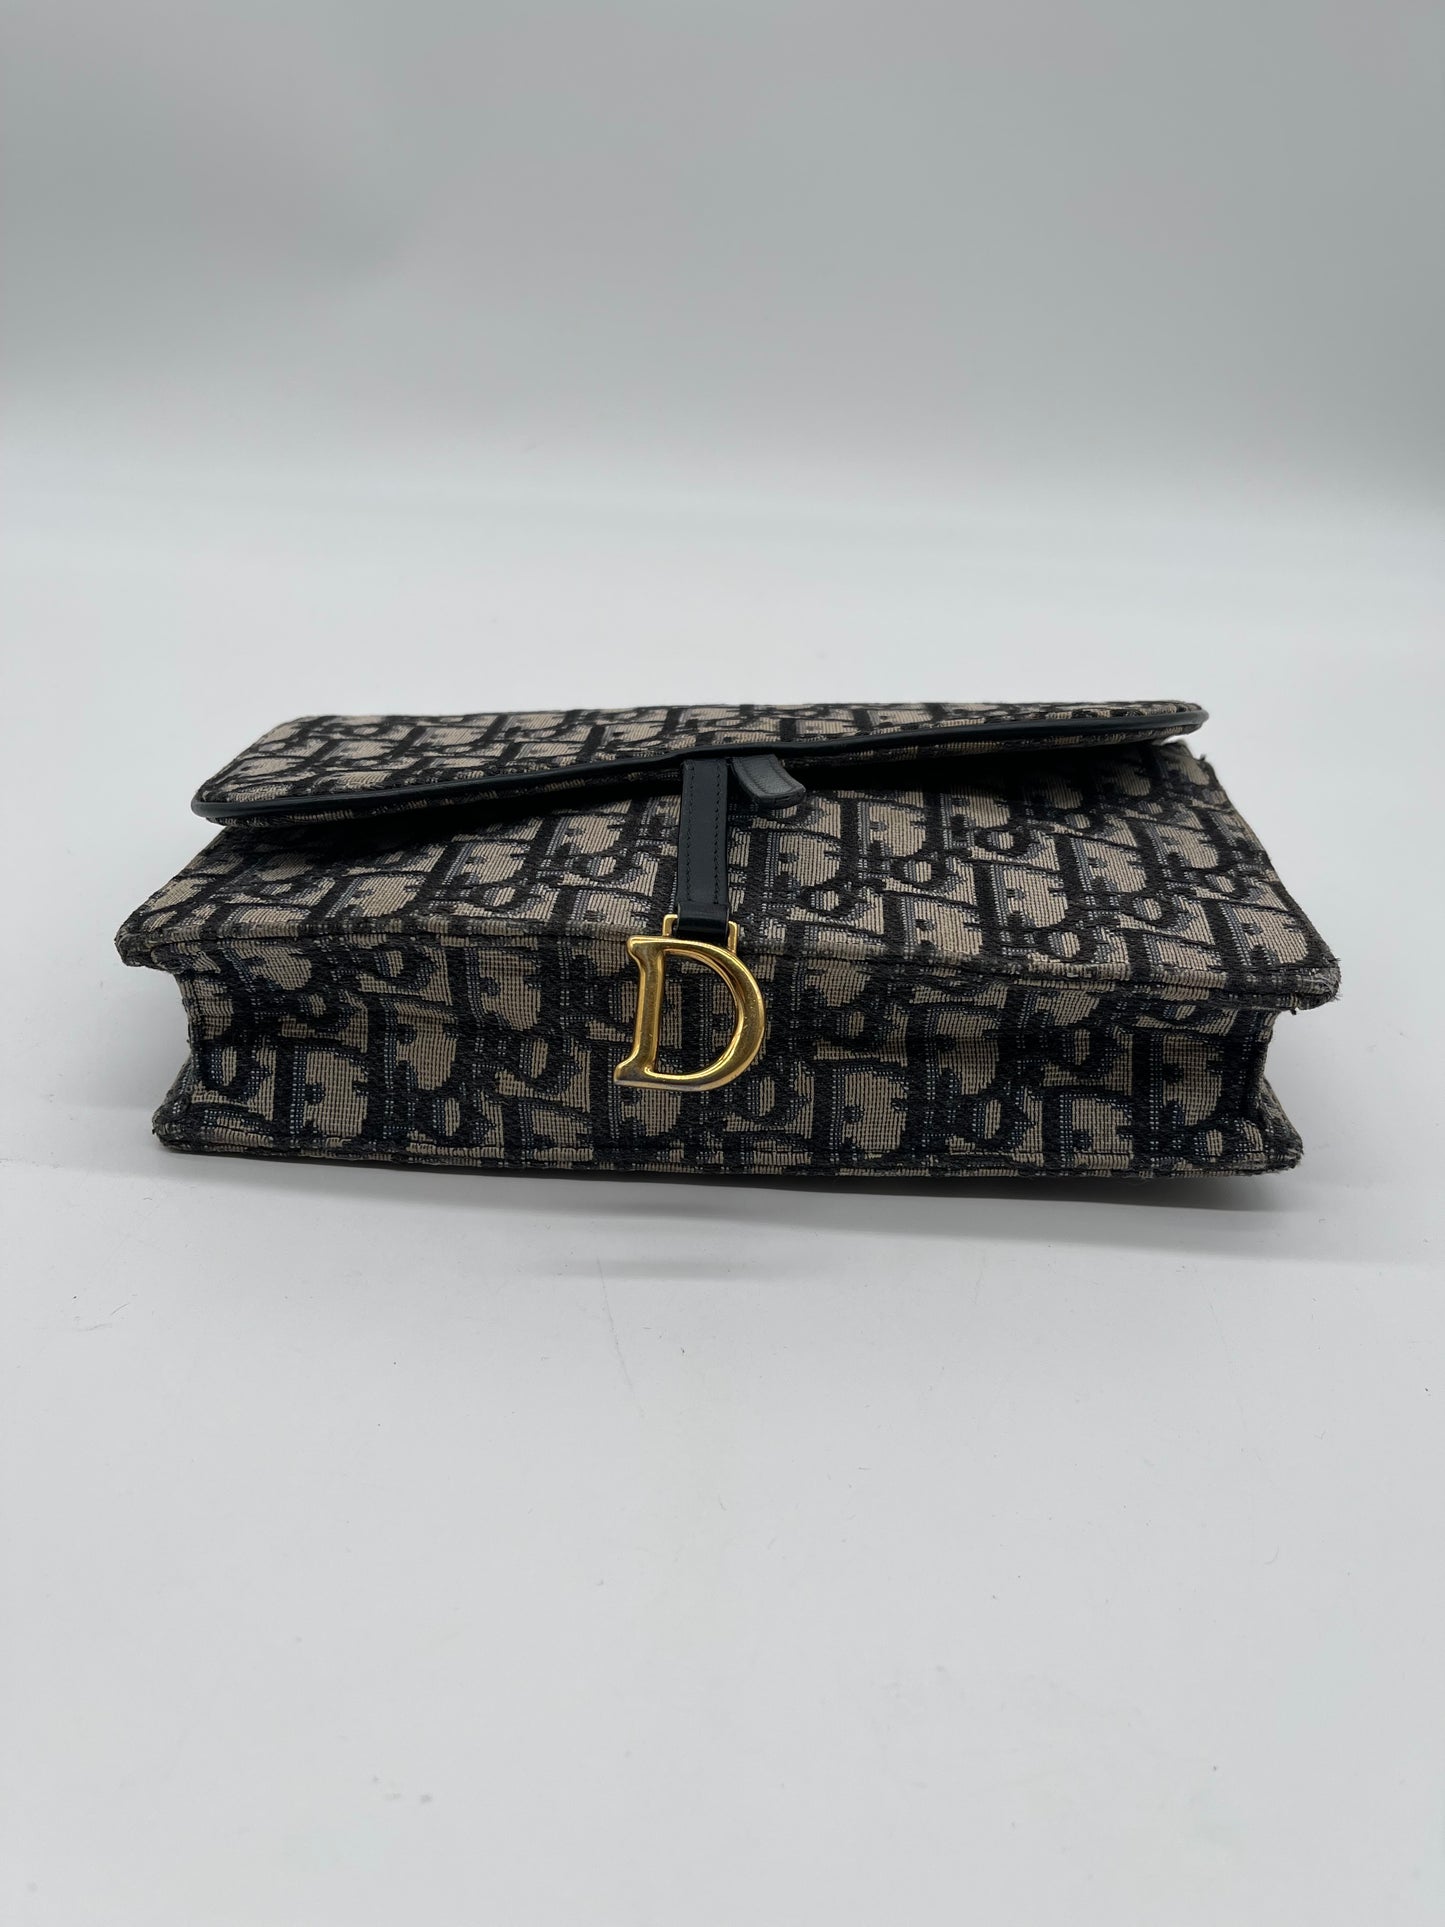 Dior Saddle rectangular crossbody bag